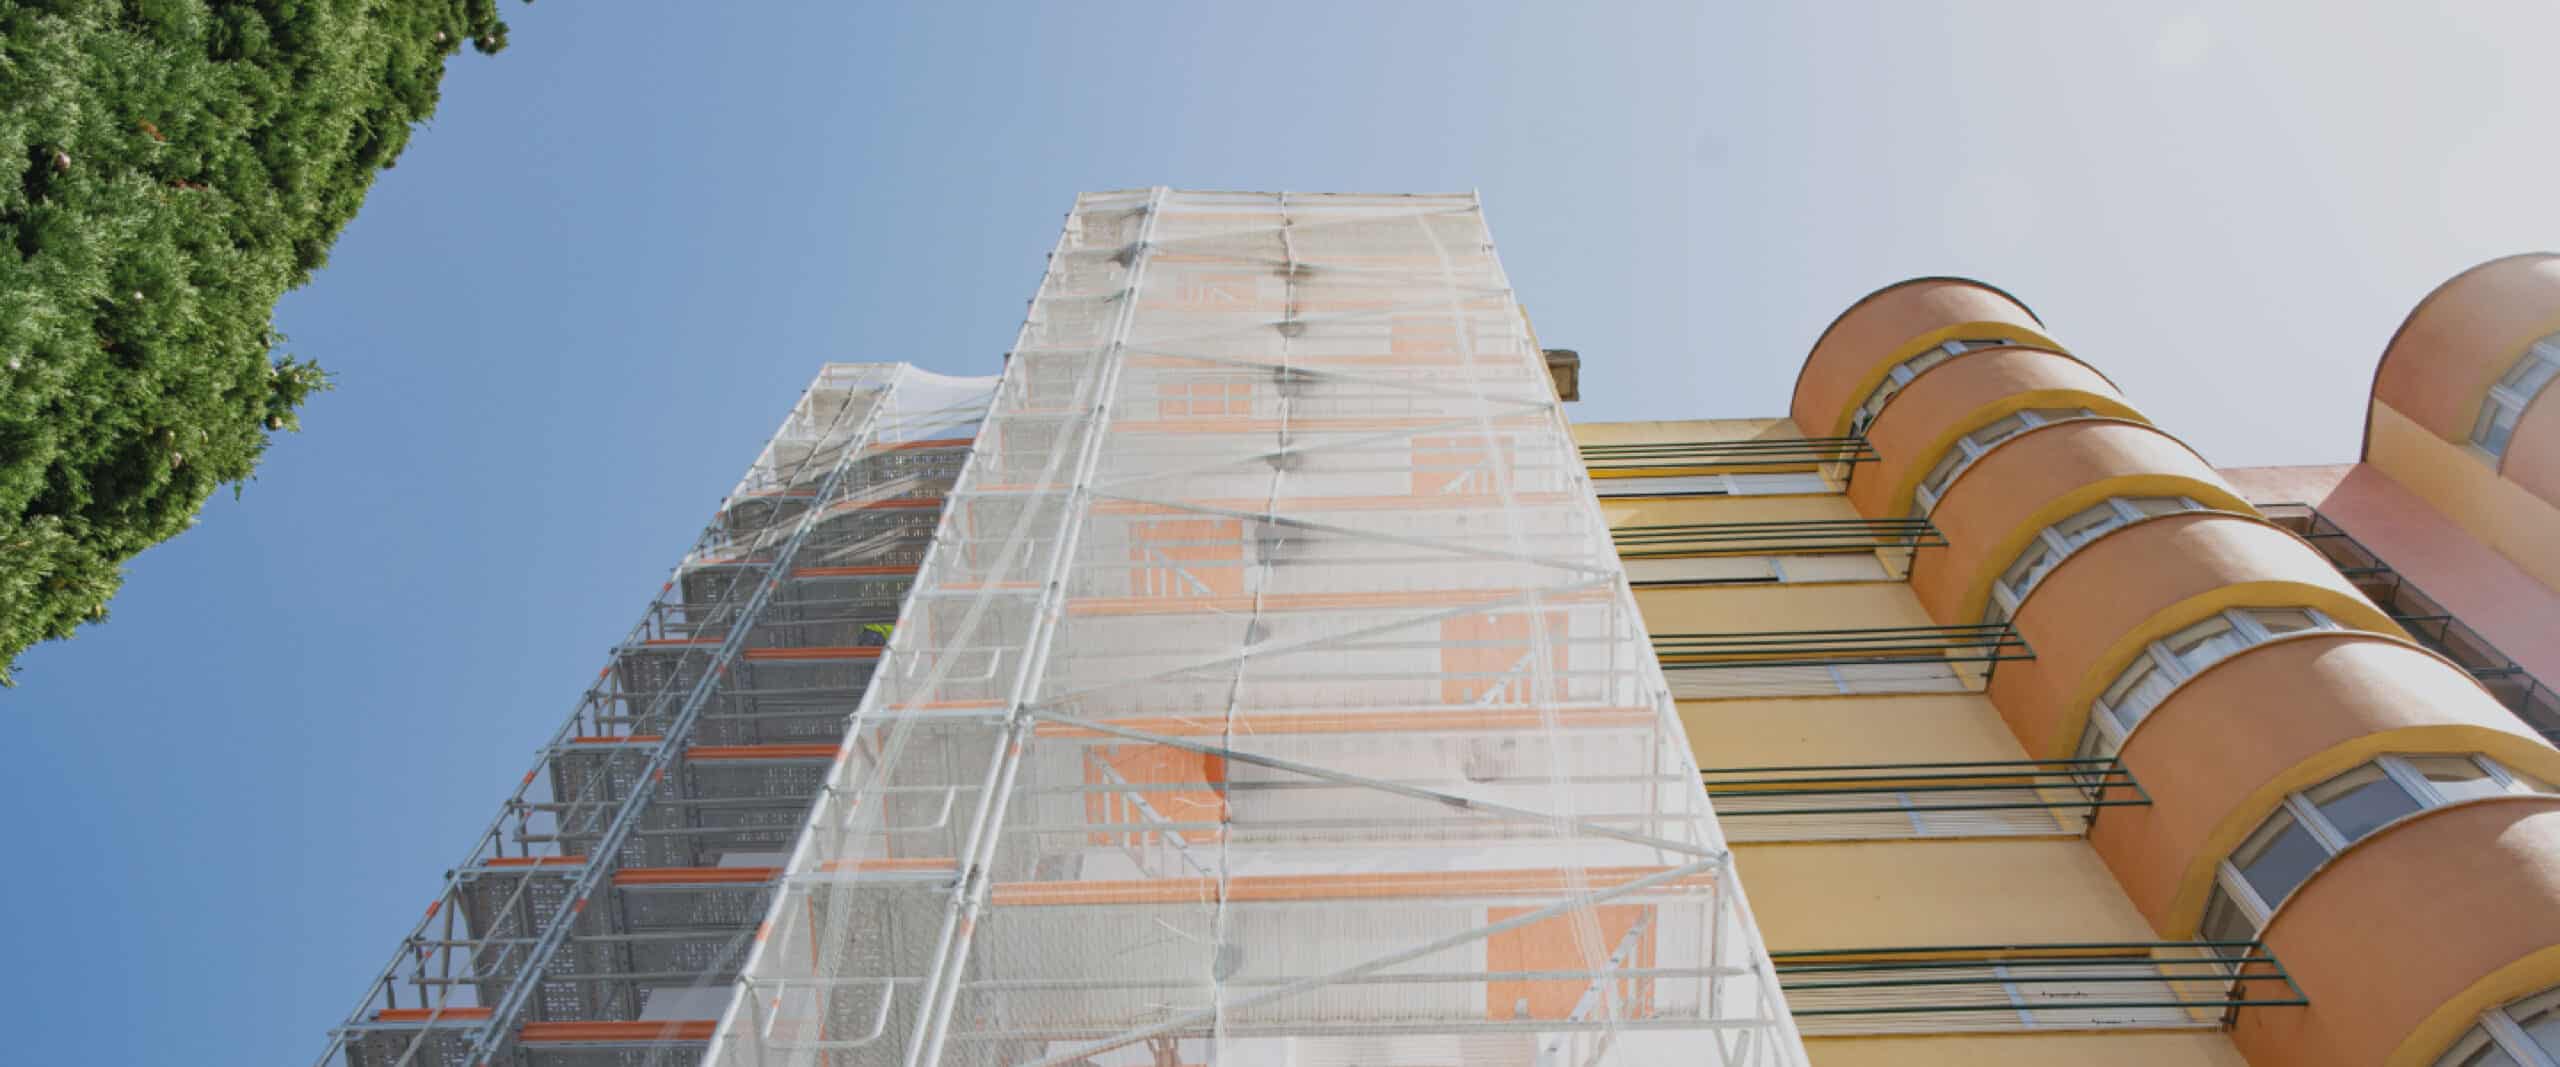 scaffolding facade-residential